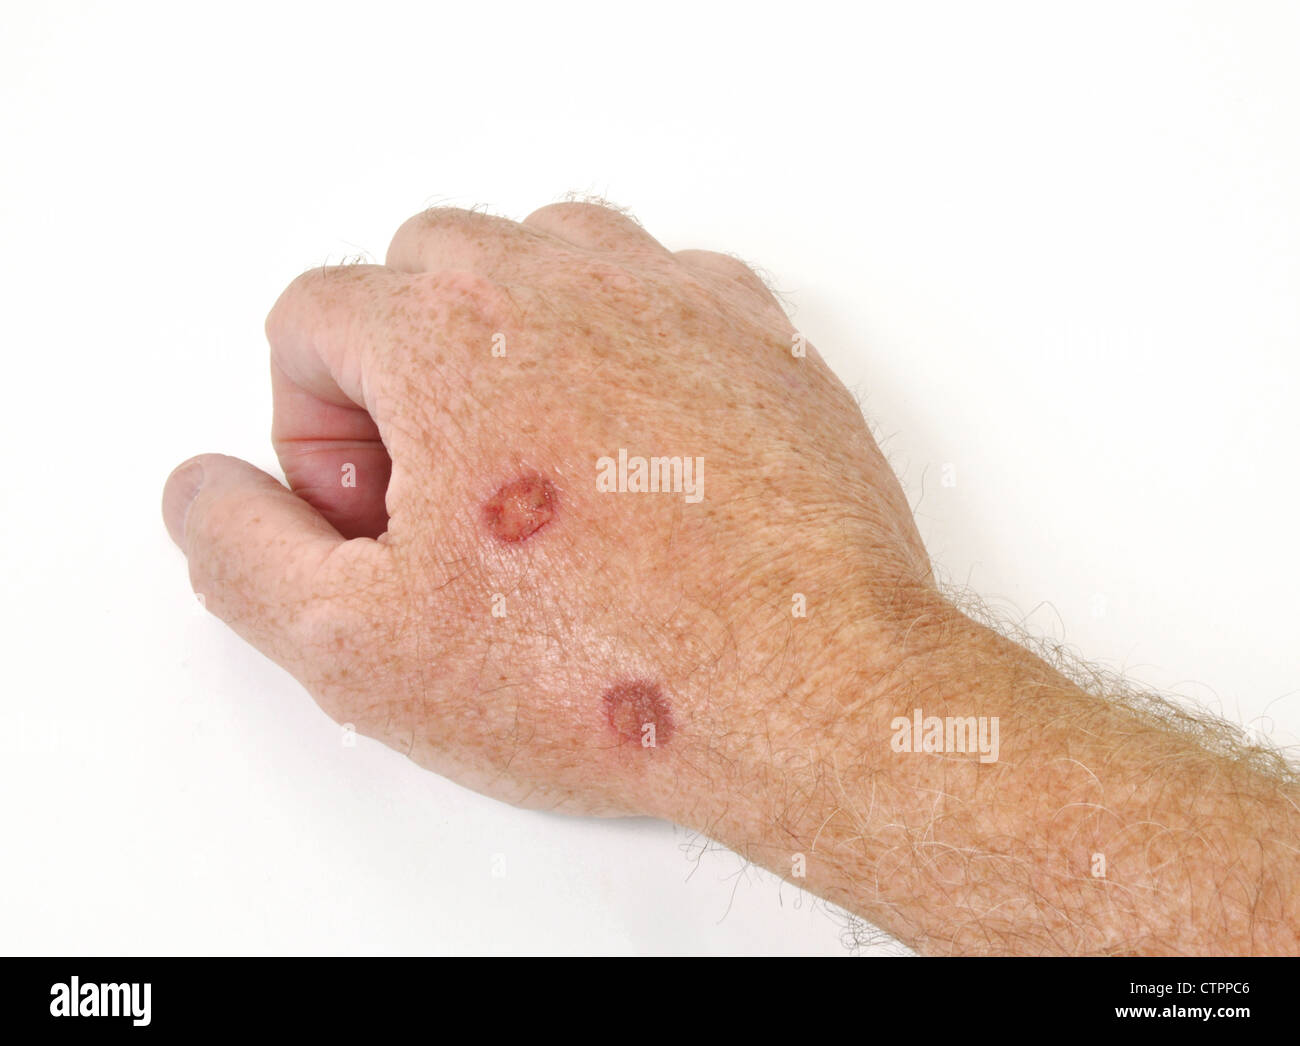 Kryotherapie Behandlung präkanzeröse Zellen aus einer Hand zu entfernen Stockfoto